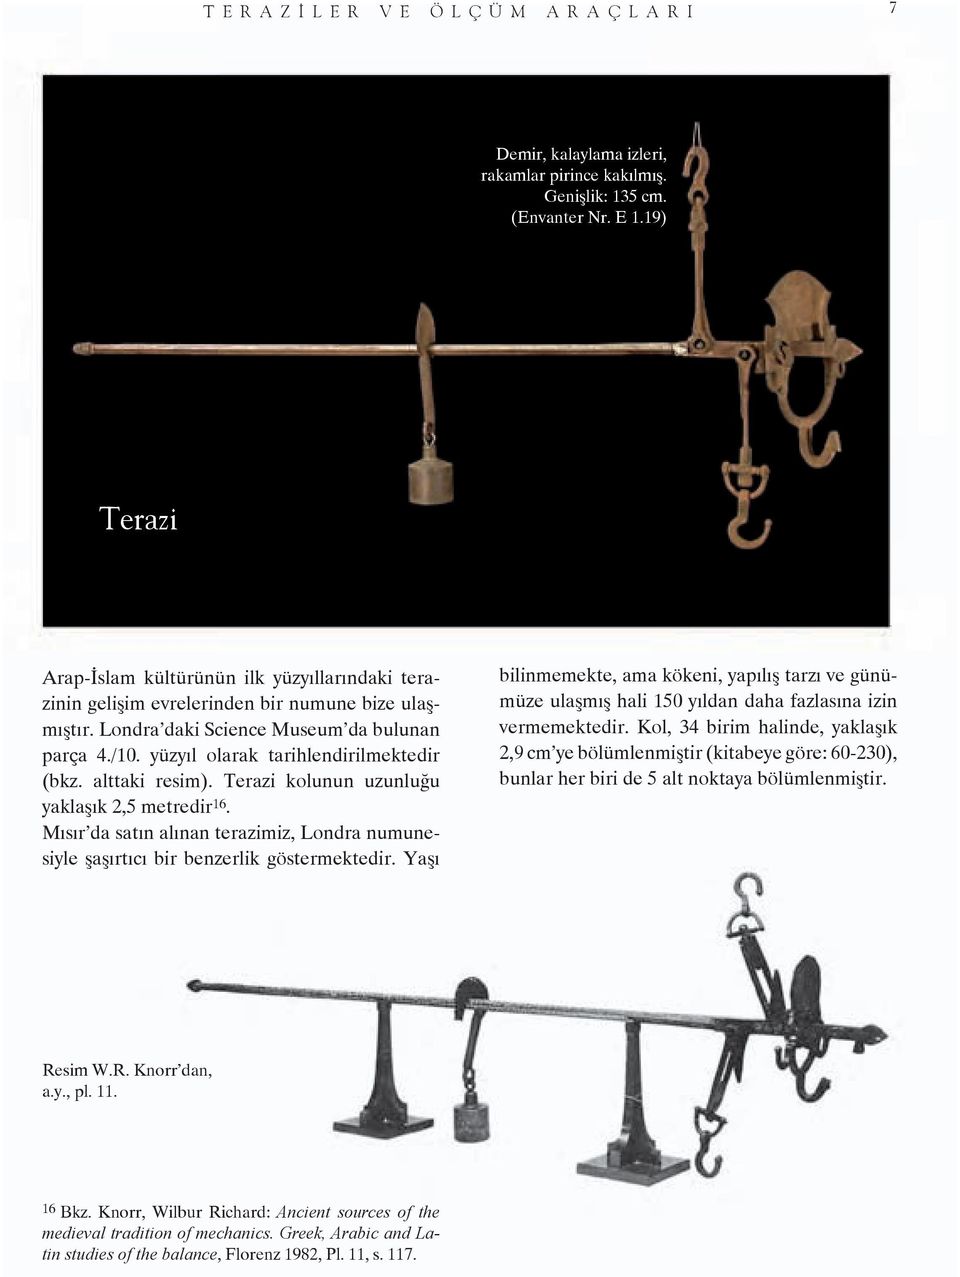 yüzyıl olarak tarihlendirilmektedir (bkz. alttaki resim). Terazi kolunun uzunluğu yaklaşık 2,5 metredir 16. Mısır da satın alınan terazimiz, Londra numunesiyle şaşırtıcı bir benzerlik göstermektedir.